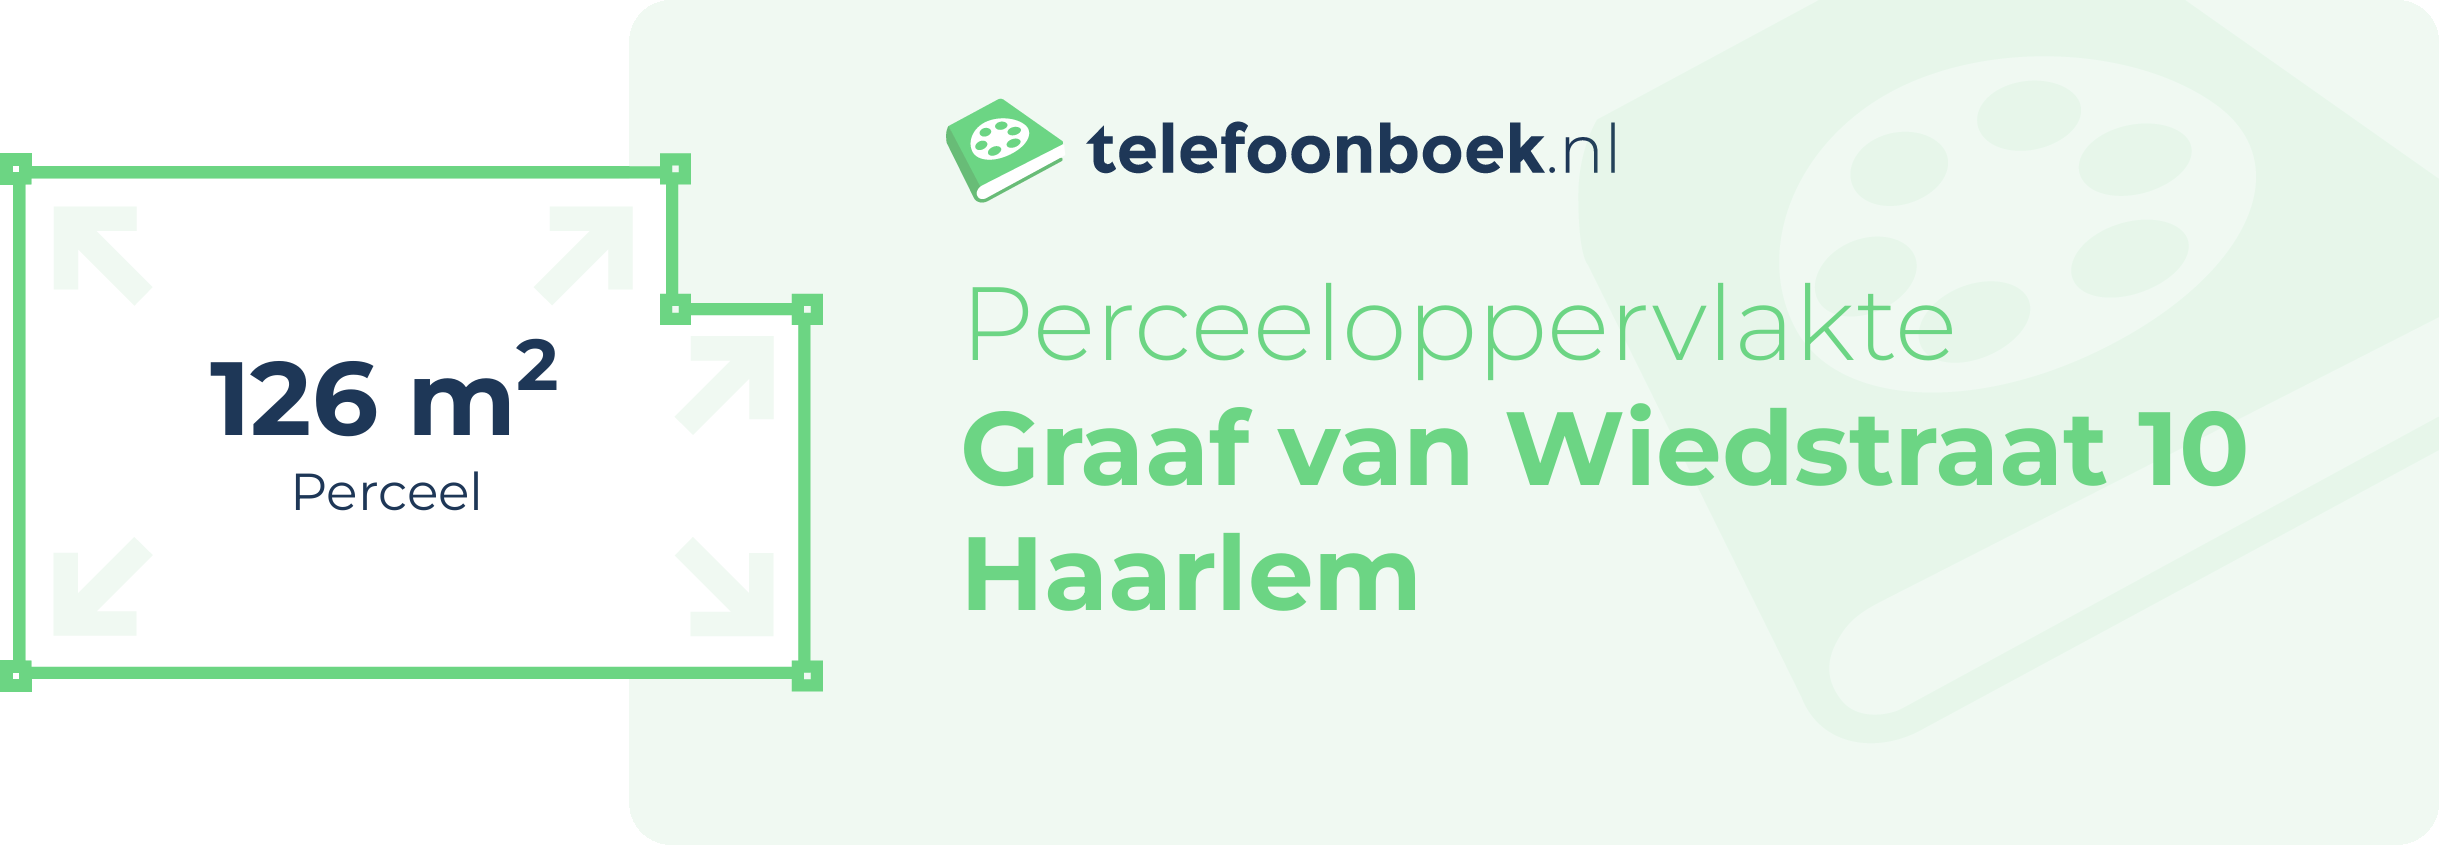 Perceeloppervlakte Graaf Van Wiedstraat 10 Haarlem